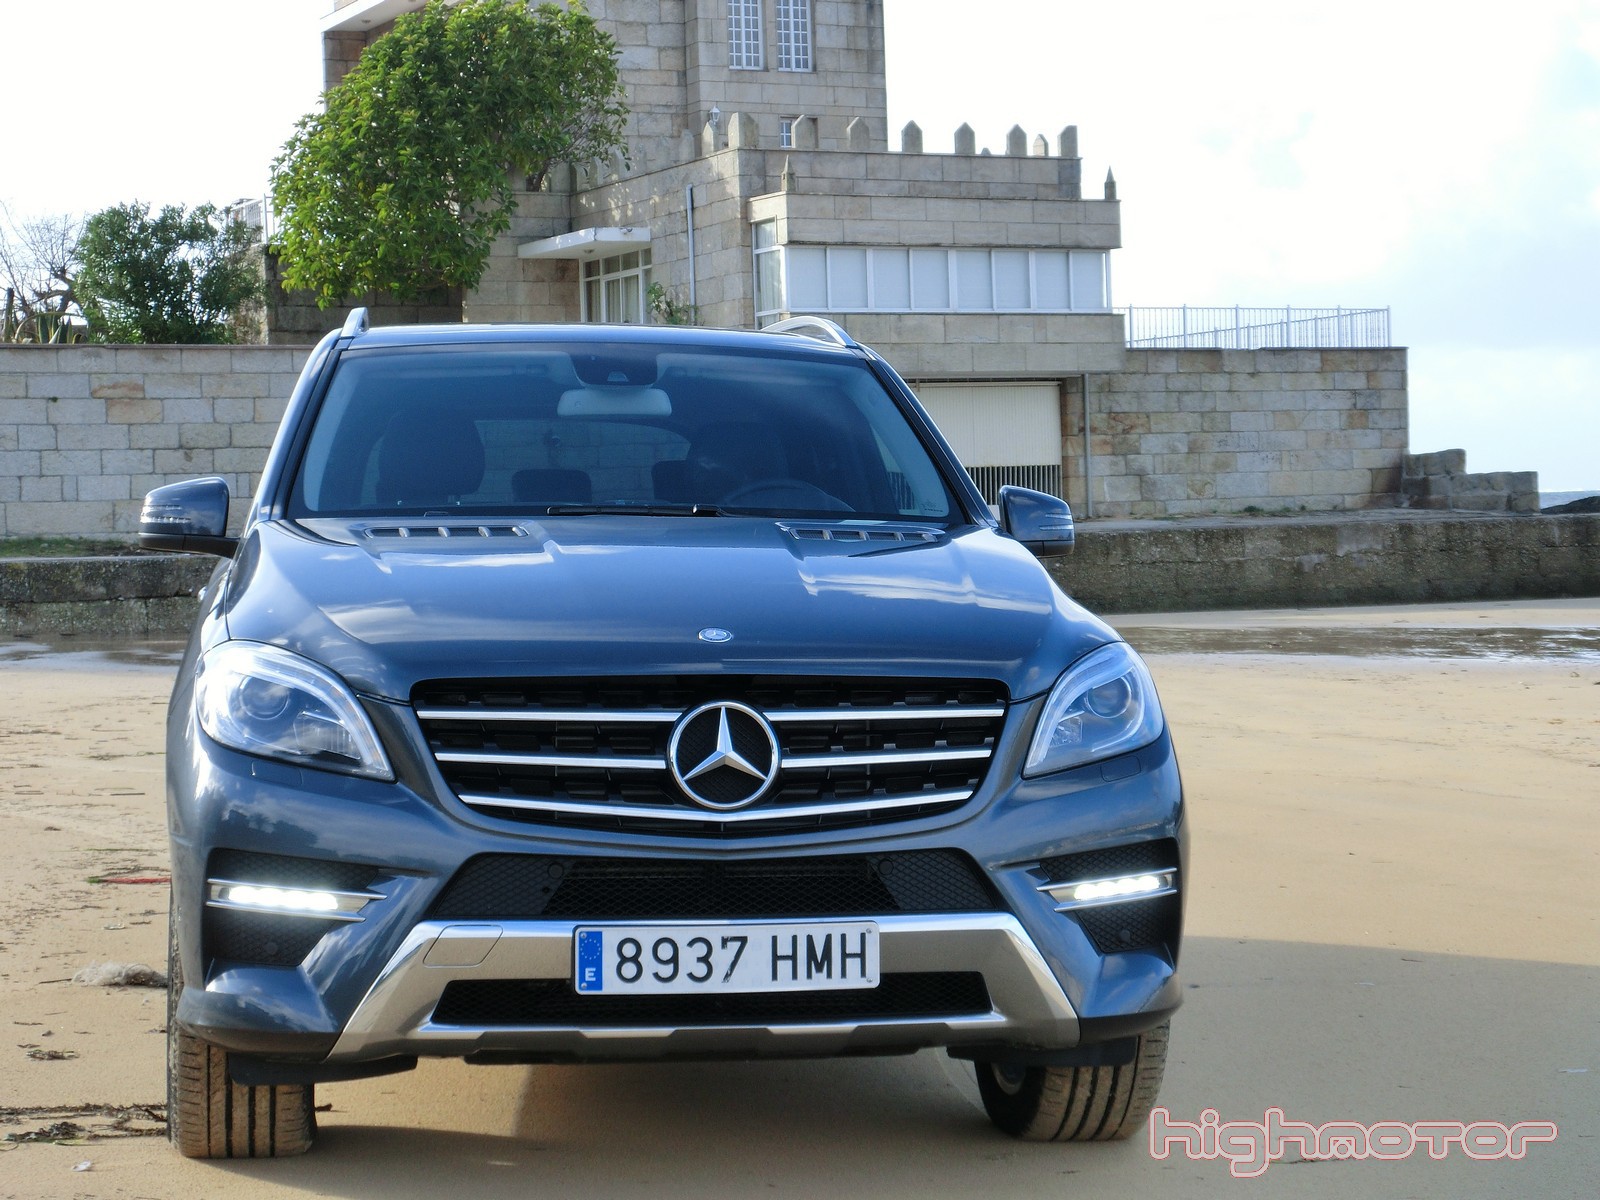 Mercedes ML 350 BlueTec de 258 CV, prueba (Equipamiento, valoración general y precio)